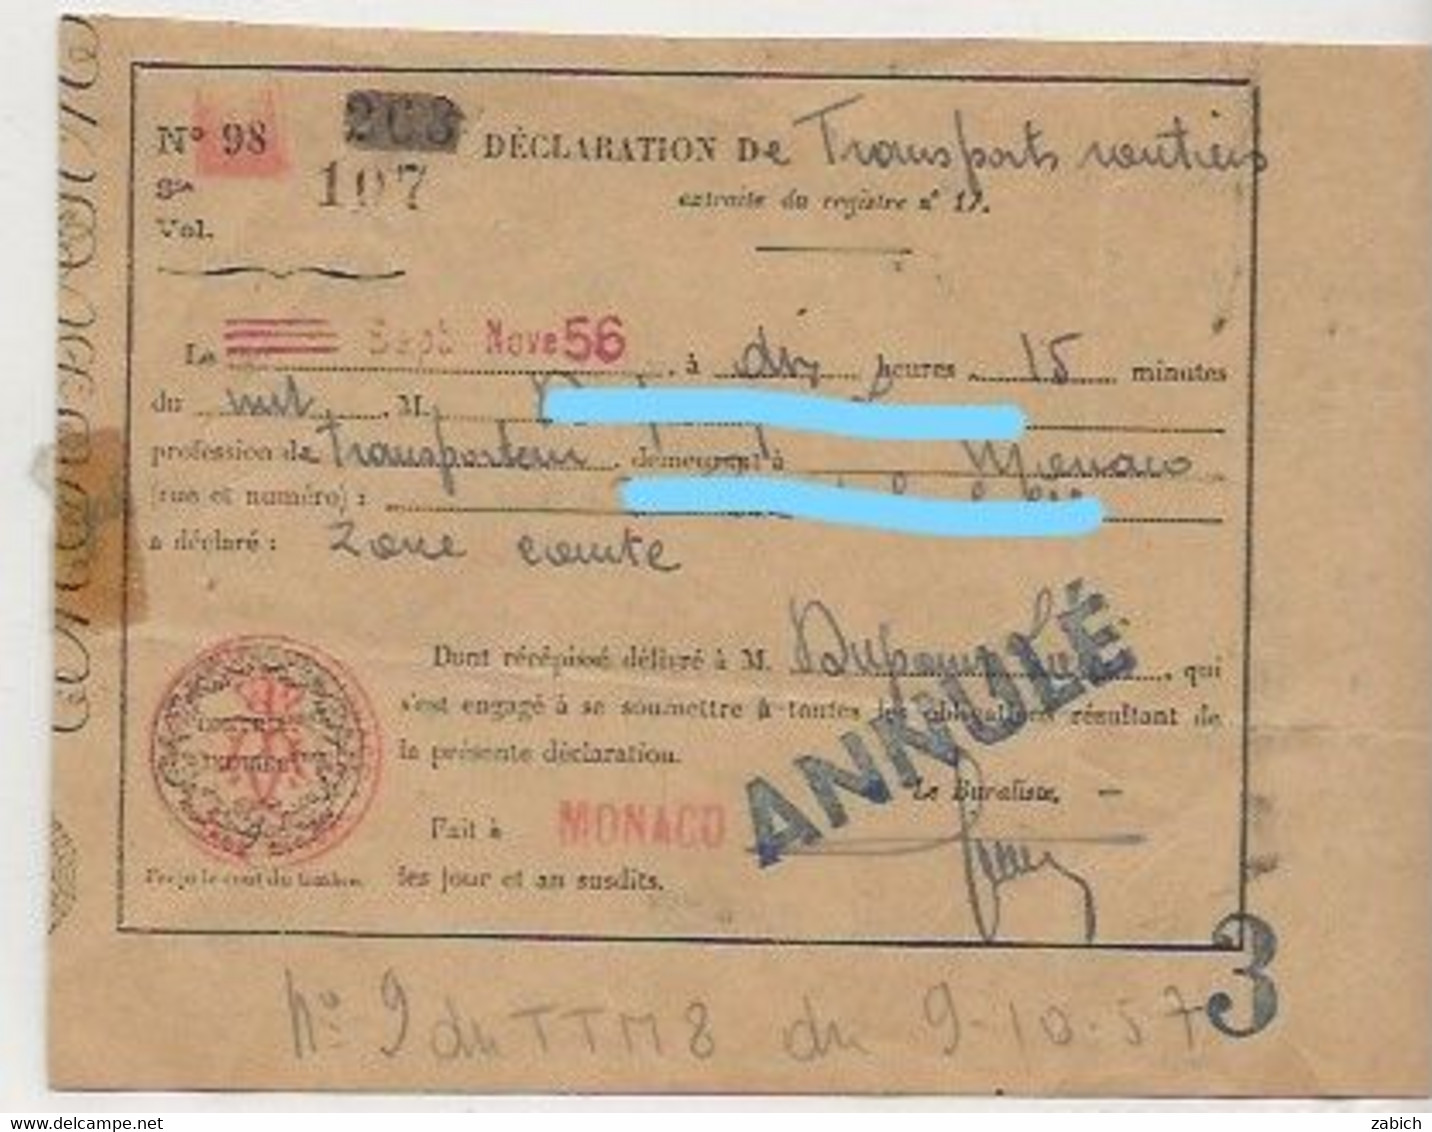 TIMBRES FISCAUX DE MONACO DECLARATON De TRANSPORTS PETIT TMBRE FISCAL à L'extraordinaire RAINIER III 1956 - Steuermarken